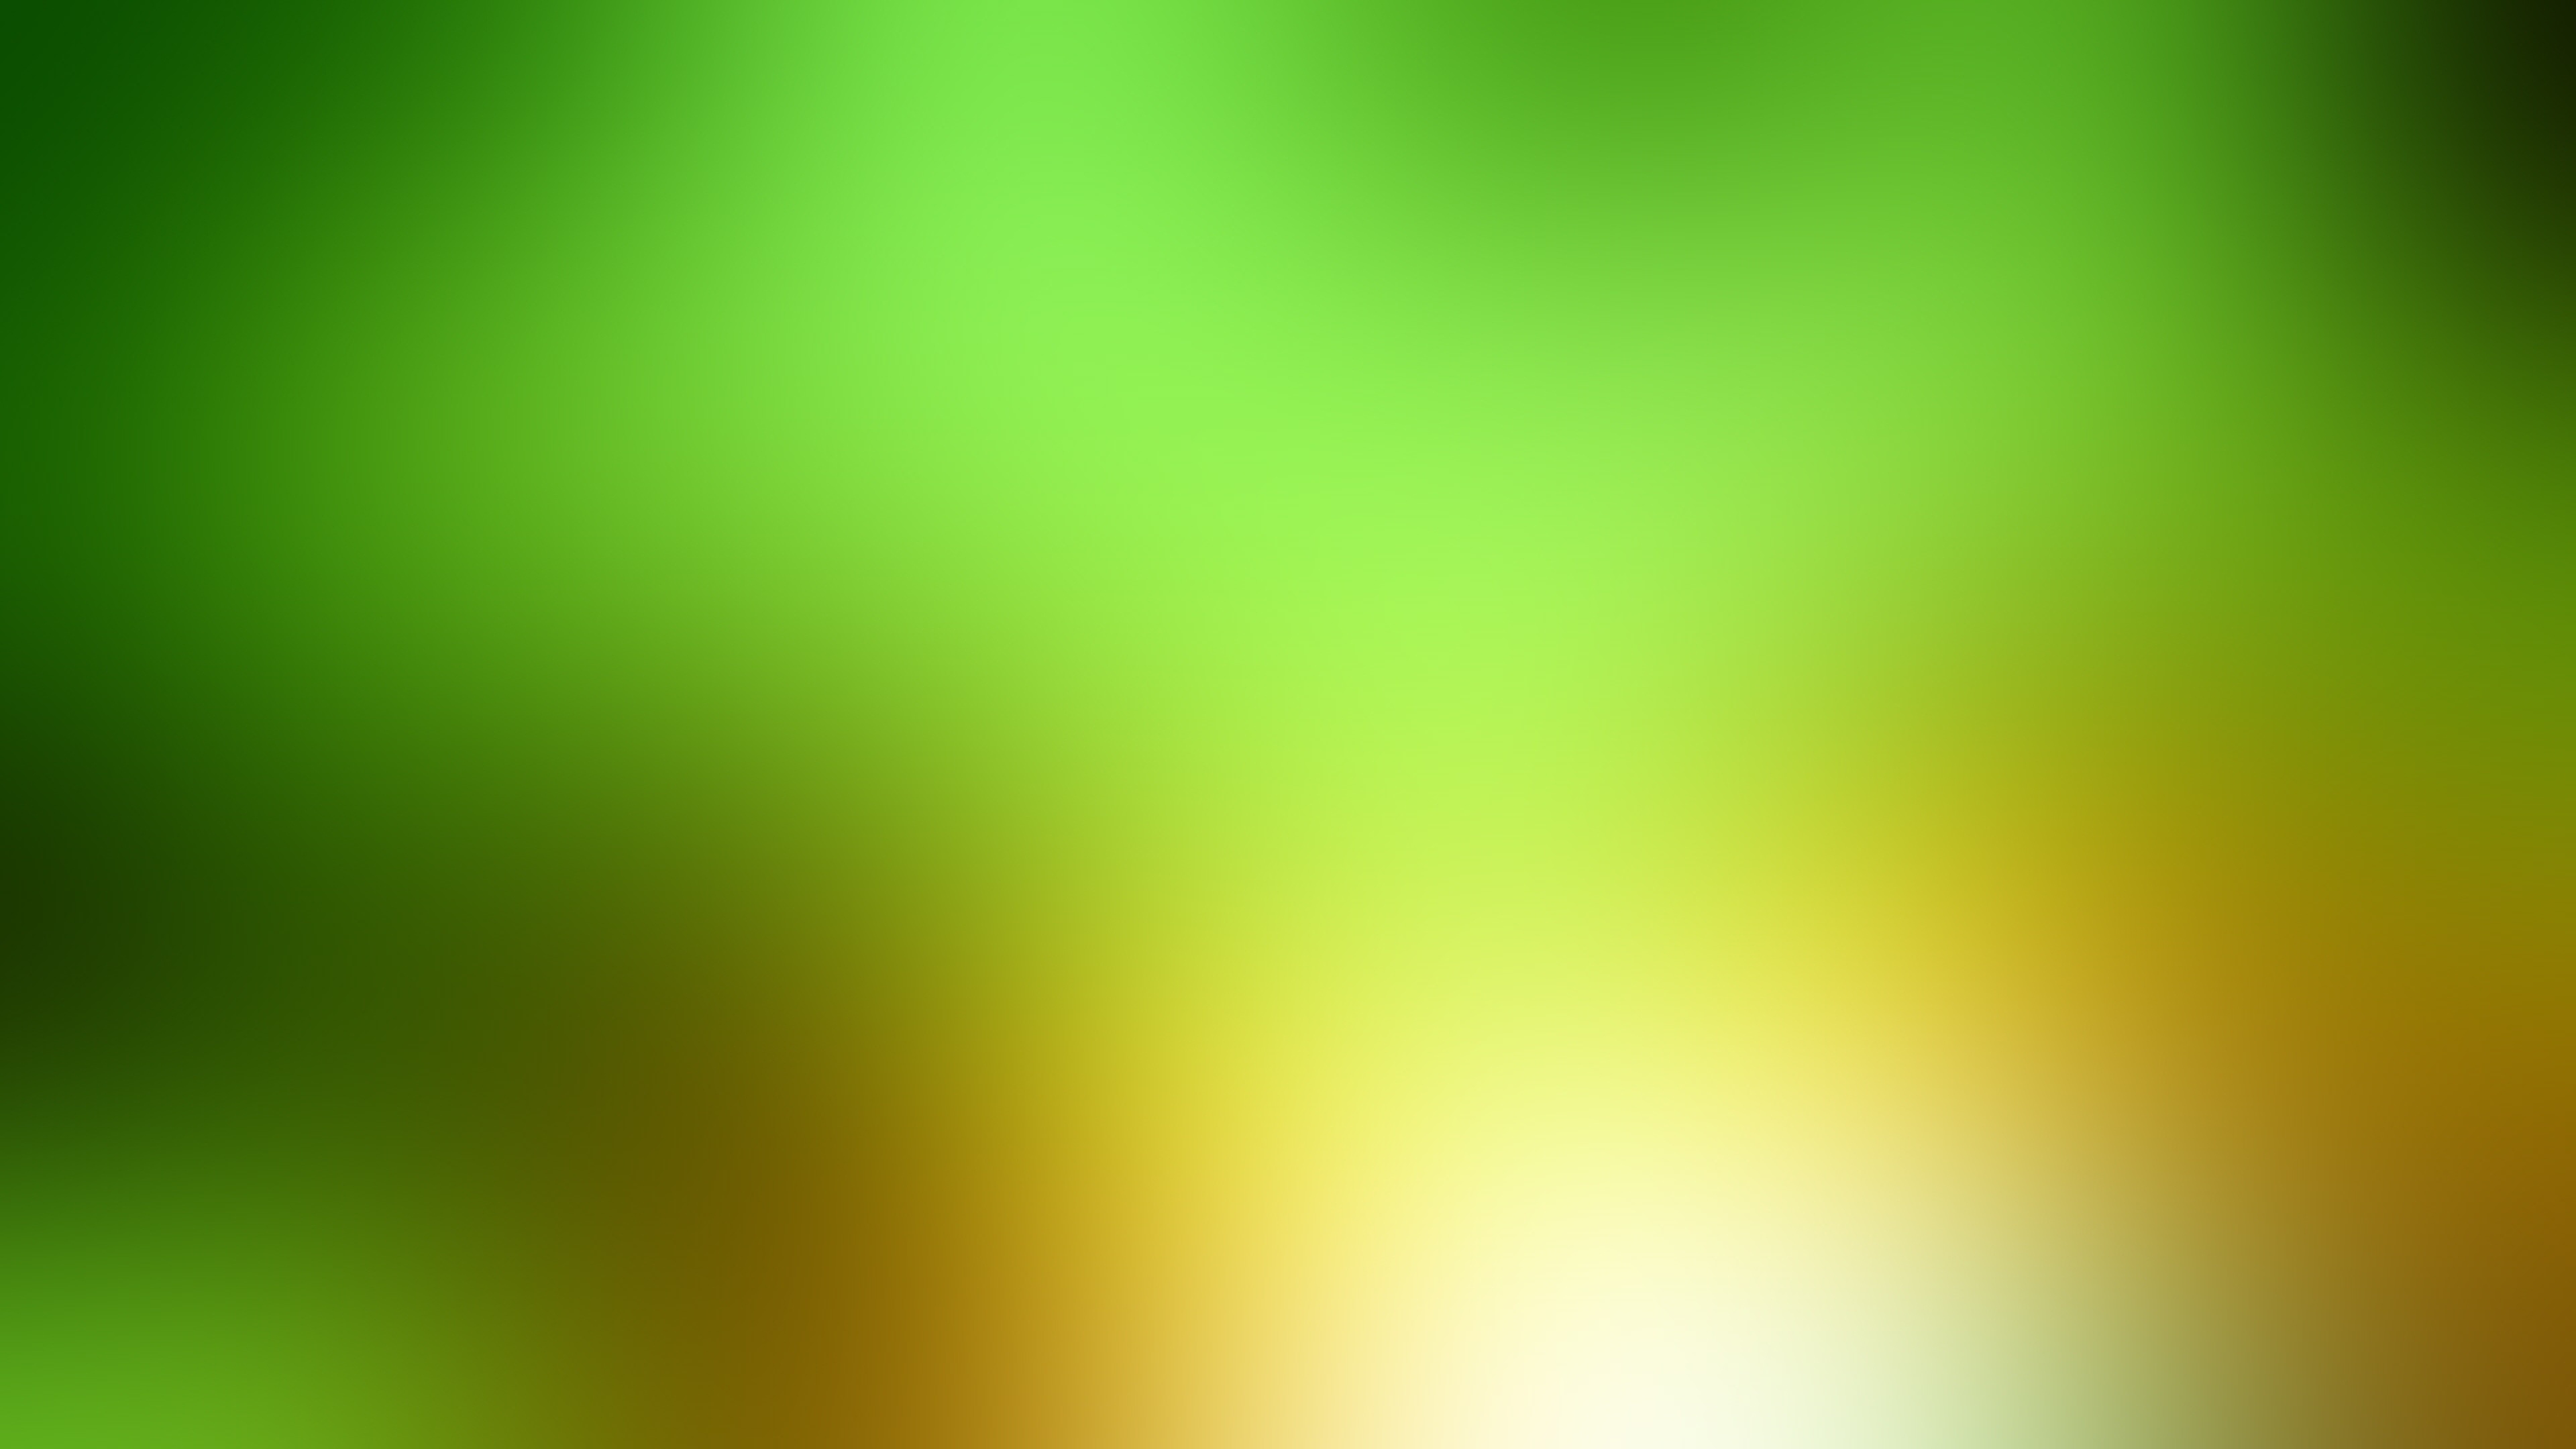 Download Wallpaper 3840x2160 Green, Yellow, White, Spot 4K Ultra ...